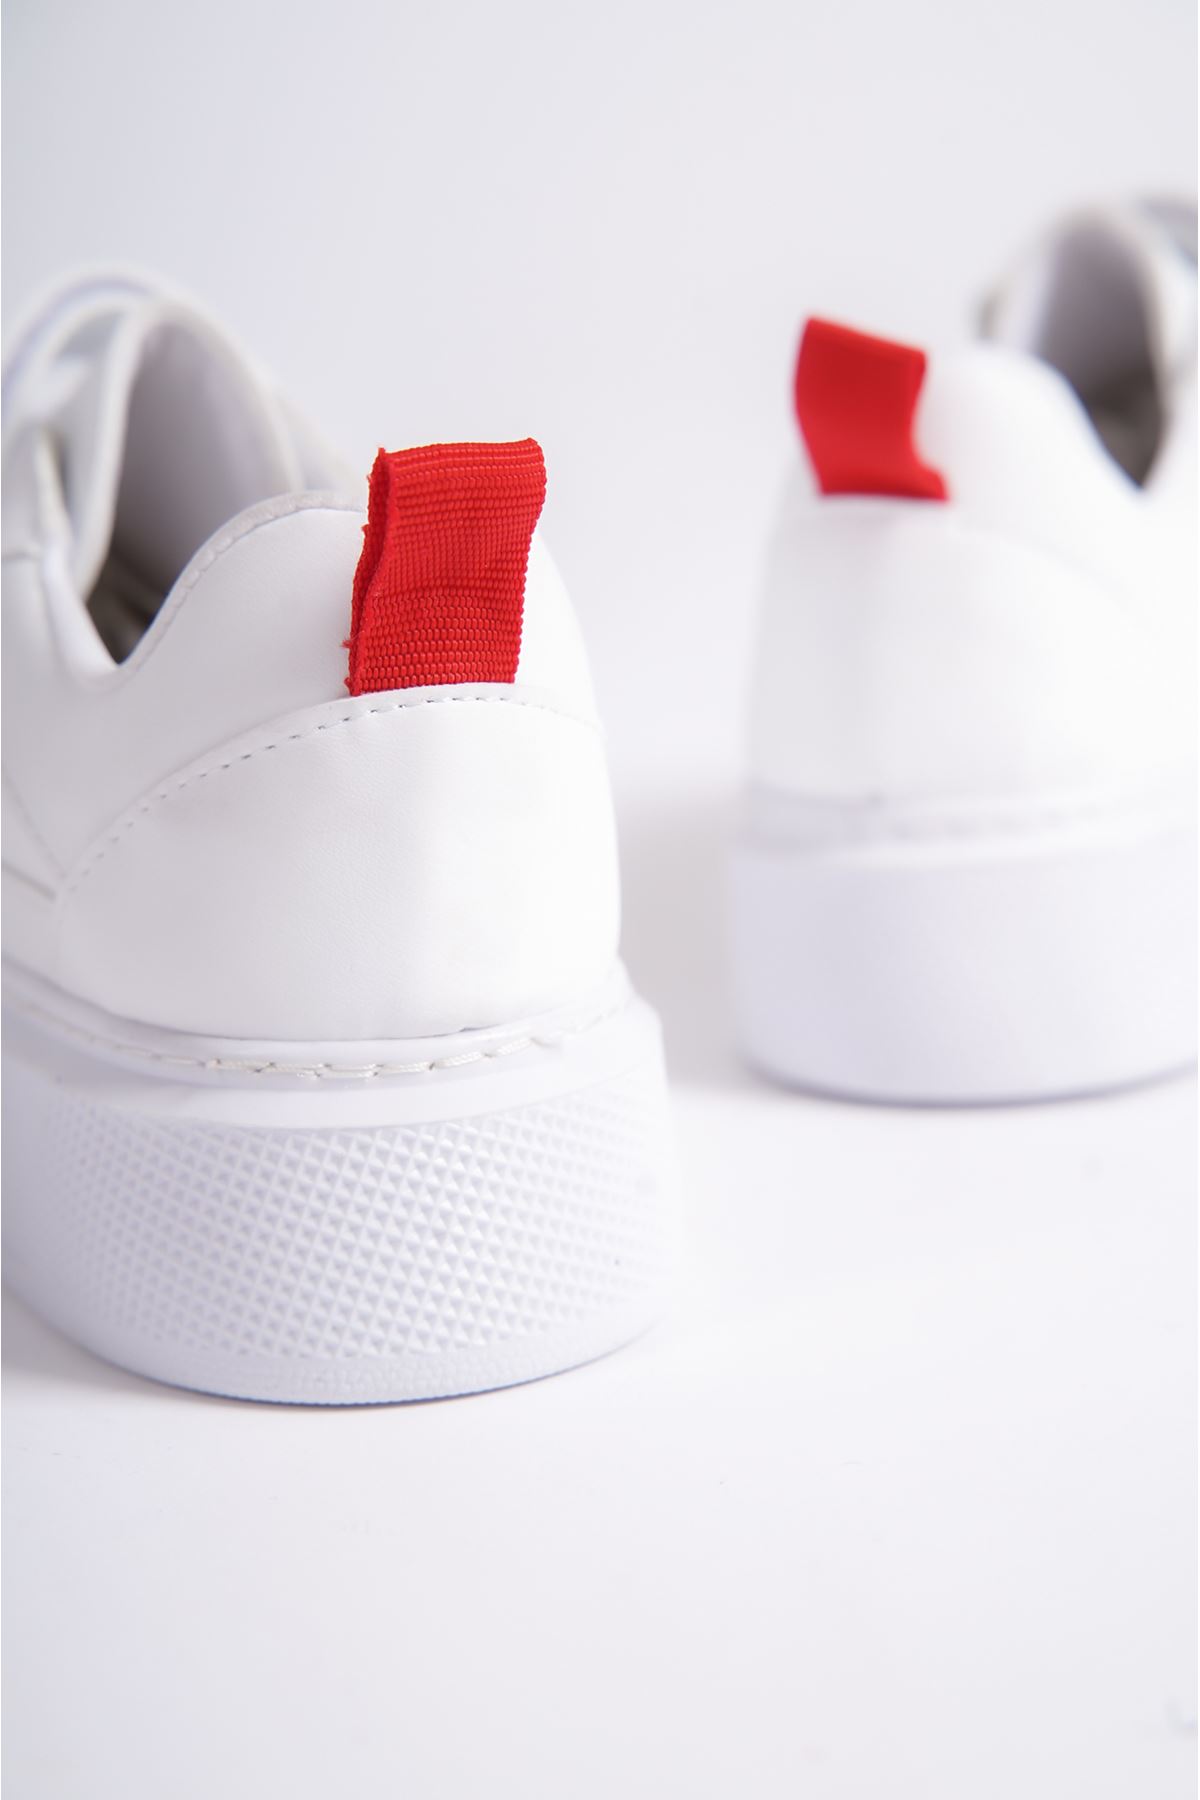 Robin Beyaz Kırmızı Mat Deri Kadın Spor Ayakkabı   